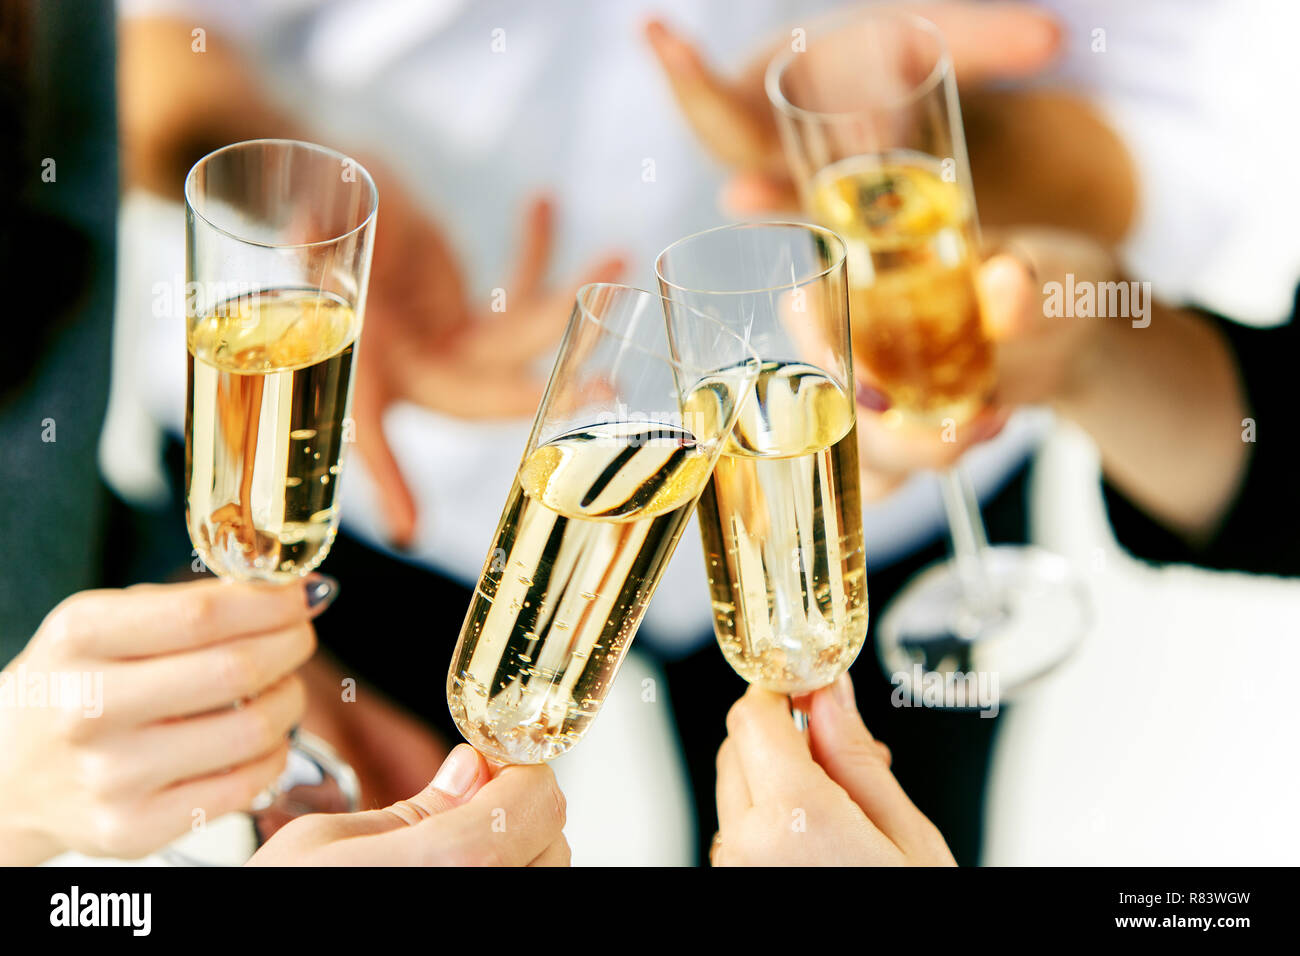 Argent POHOVE 200ml Acier Inoxydable Champagne Verre Champagne Vin Verres pour Mariage Champagne Flûtes Incassable pour Maison Cadeau Mariage Fête Et Anniversaire Vin Rouge Free Size 